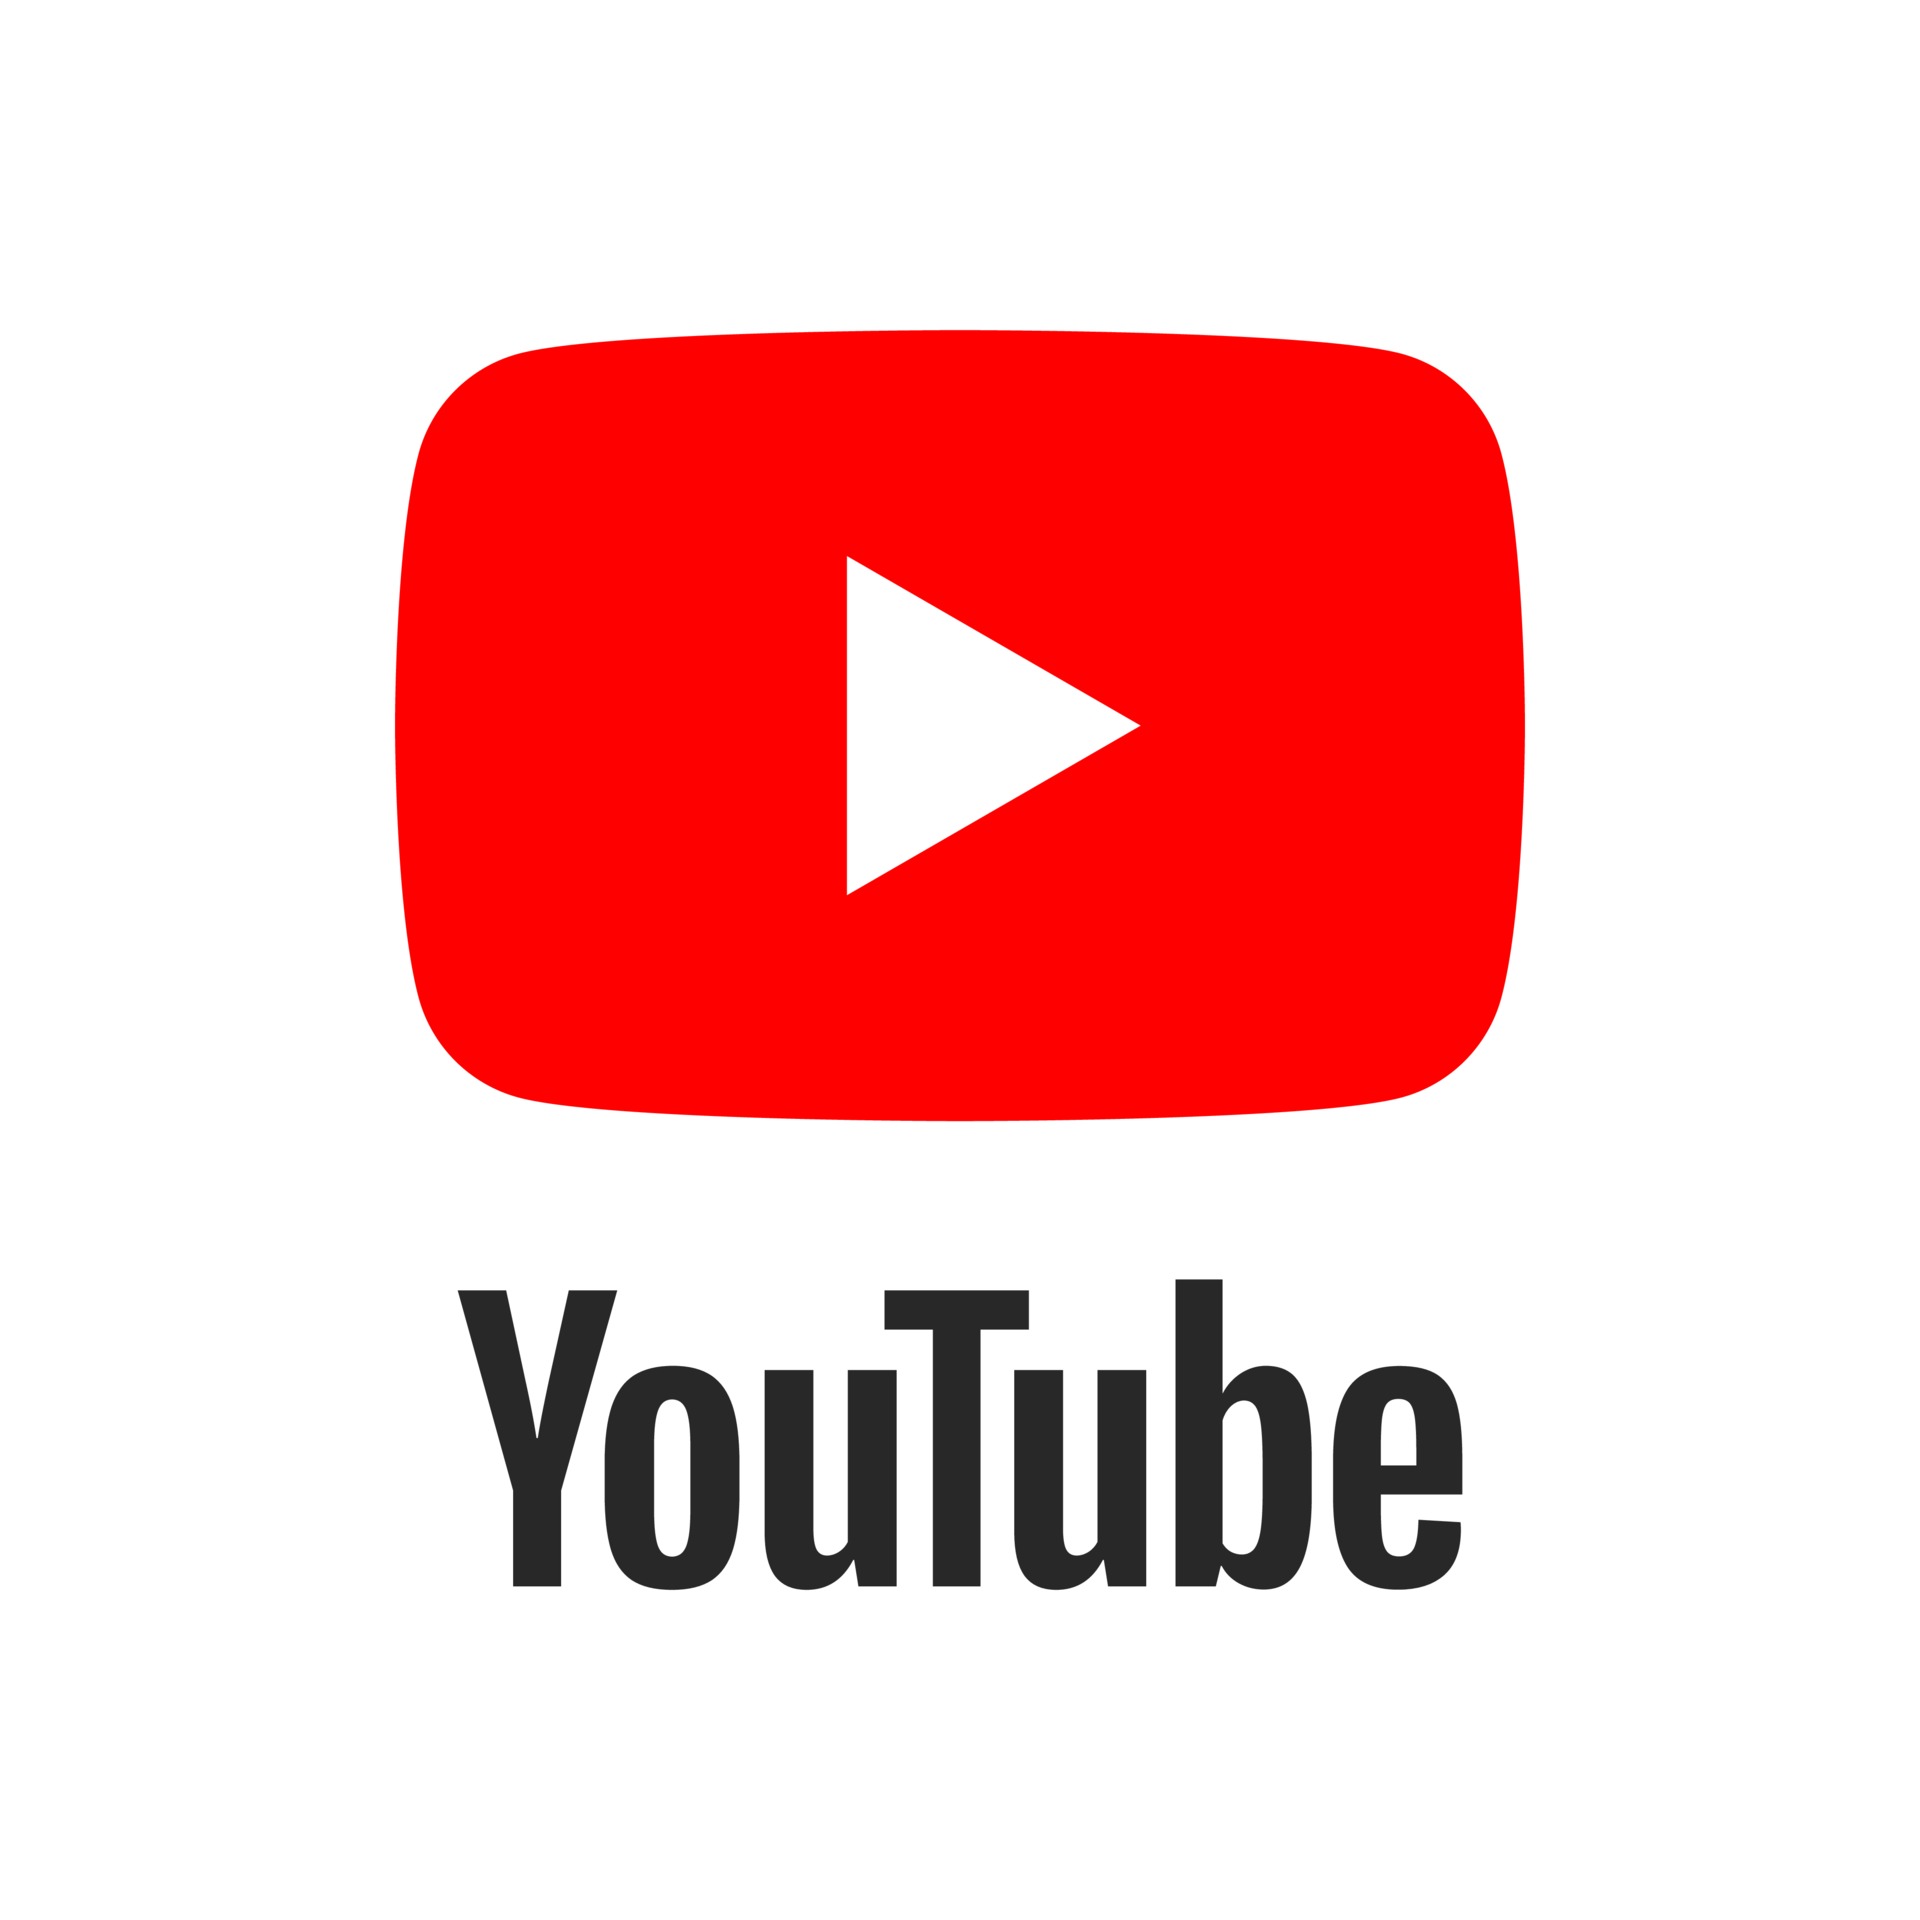 Youtube arte vettoriale, icone e grafica per il download ...